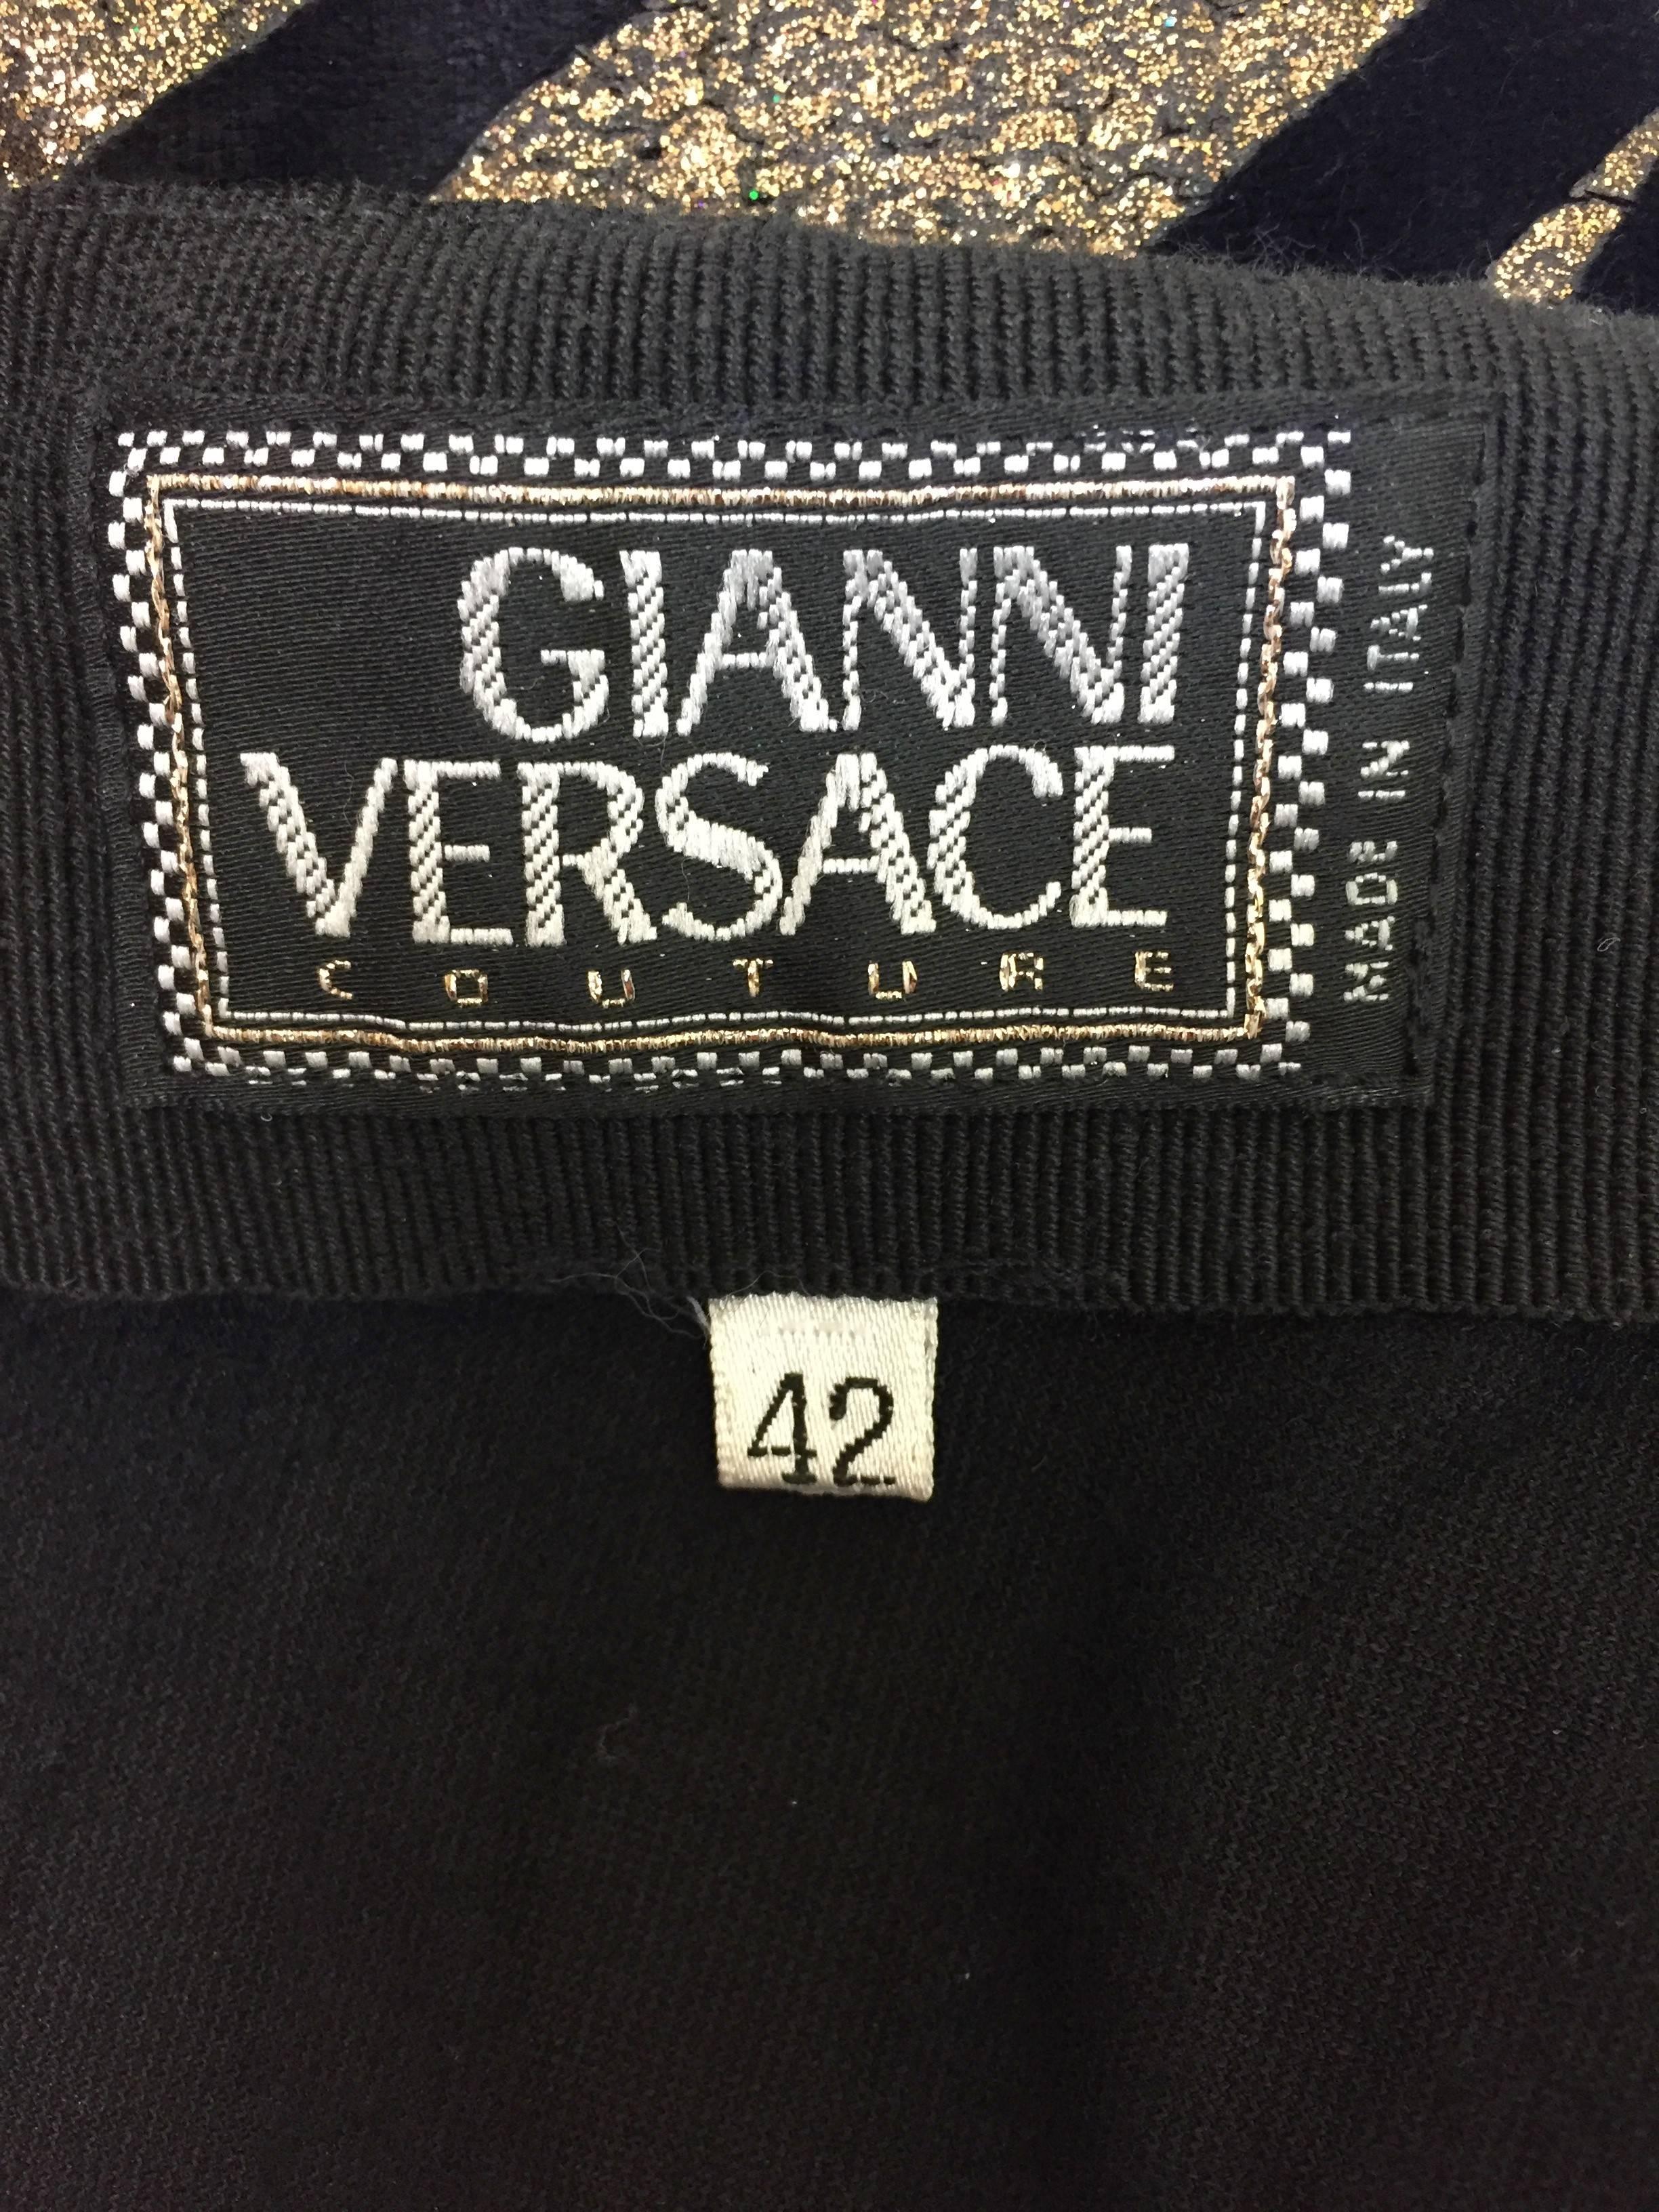 Women's C. 1992 Gianni Versace Black Velvet & Gold Glitter Zebra Leggings